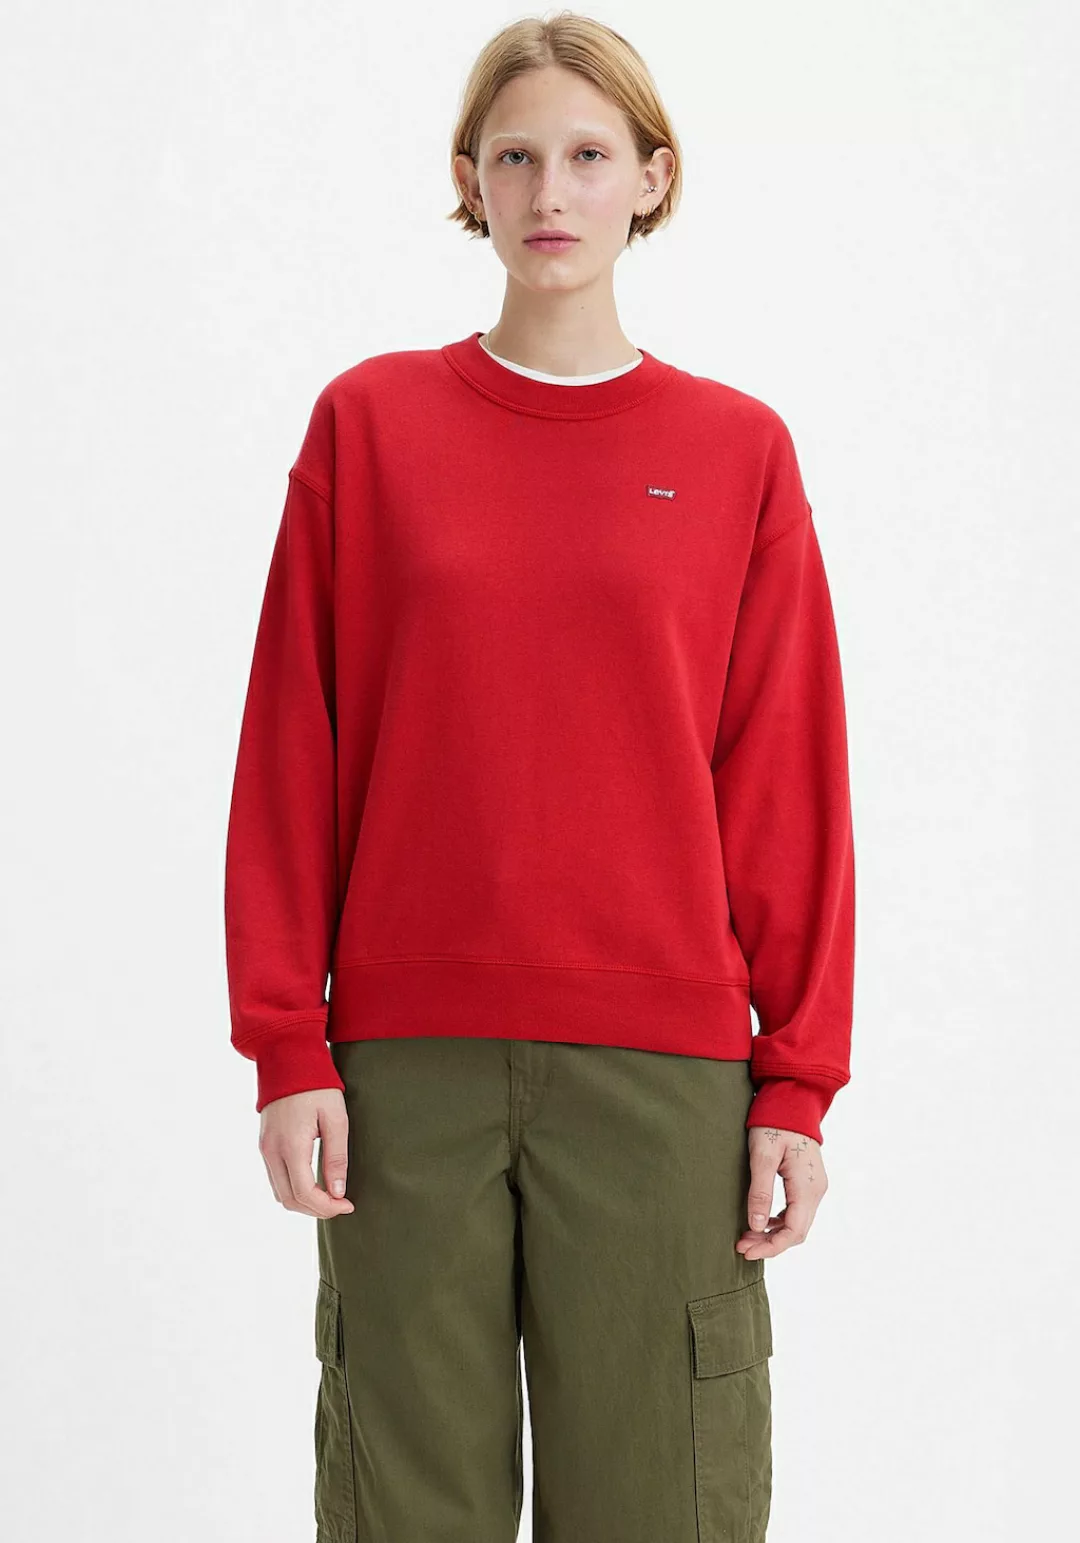 Levis Sweatshirt "Standard Crew" günstig online kaufen